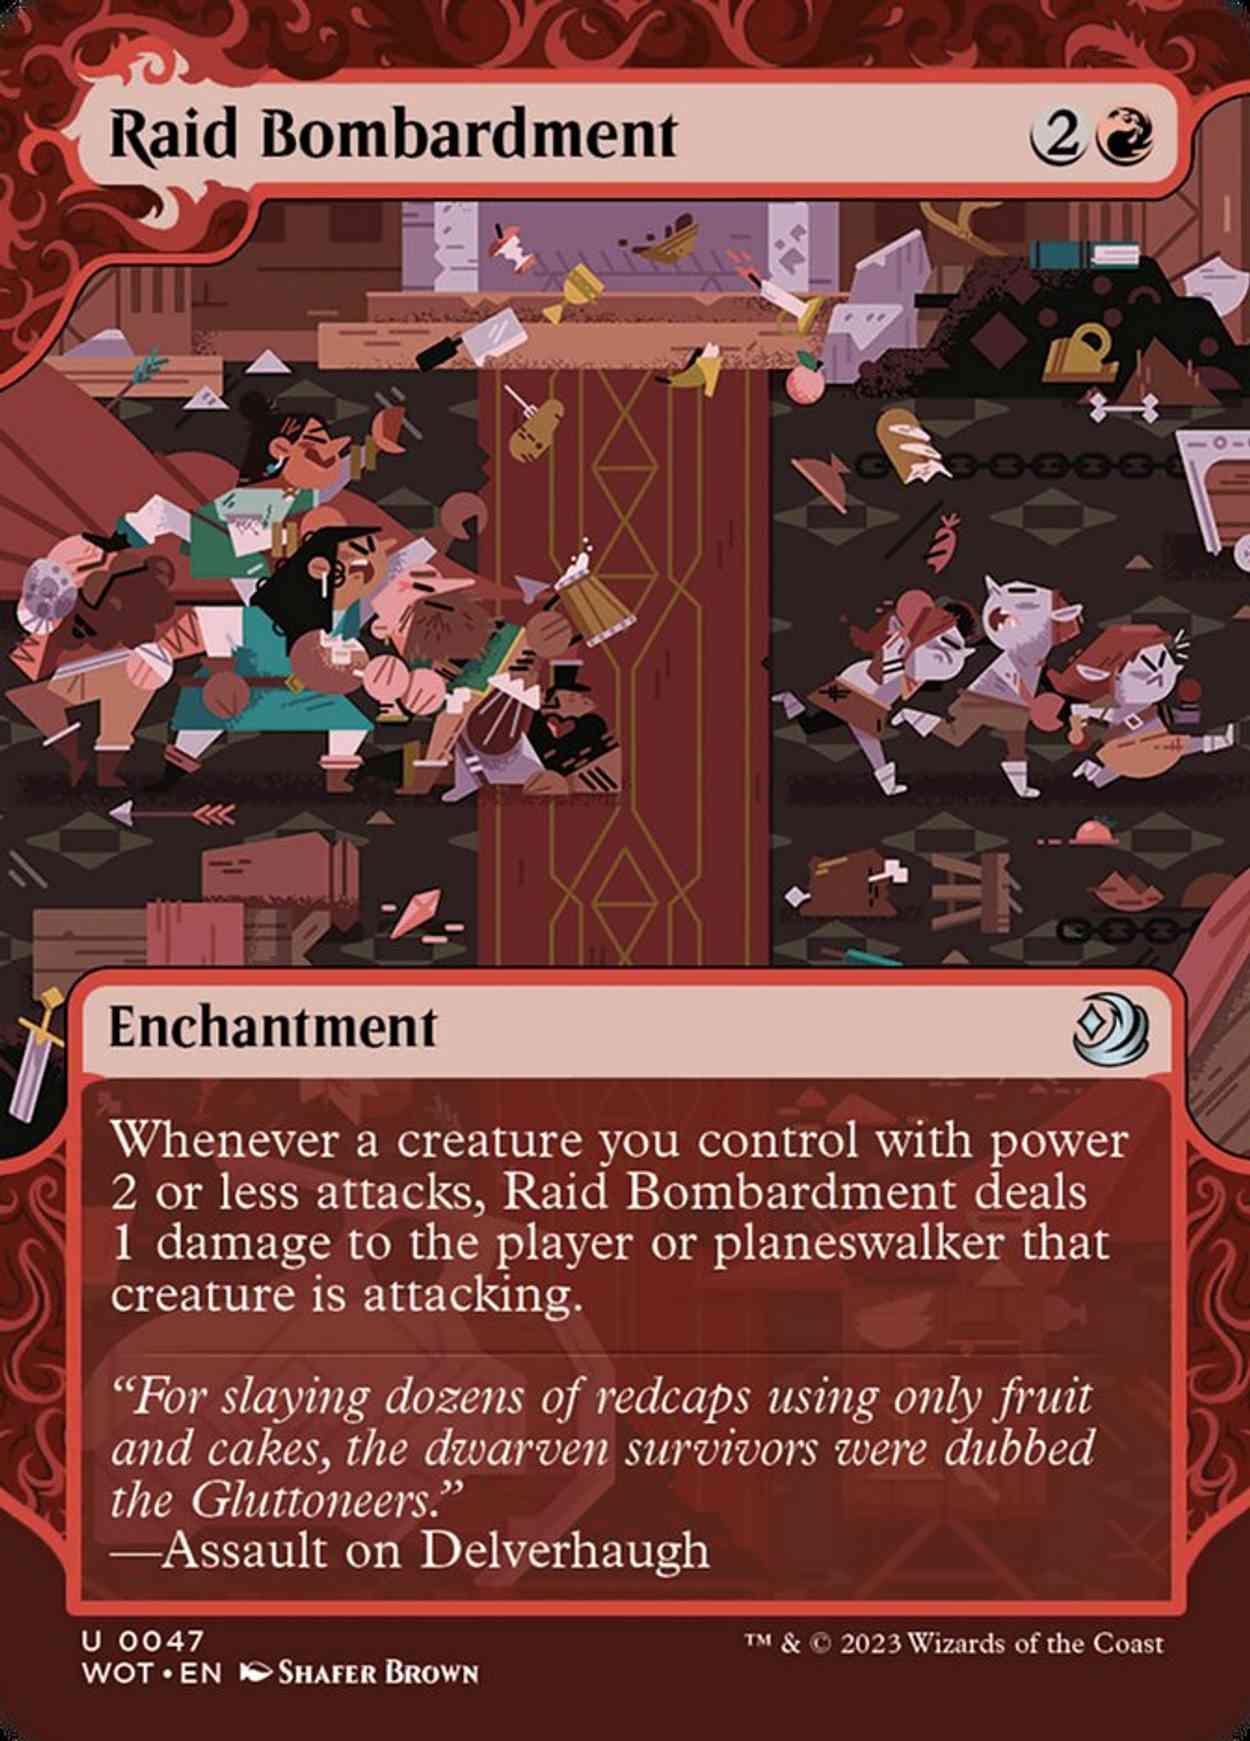 Raid Bombardment magic card front